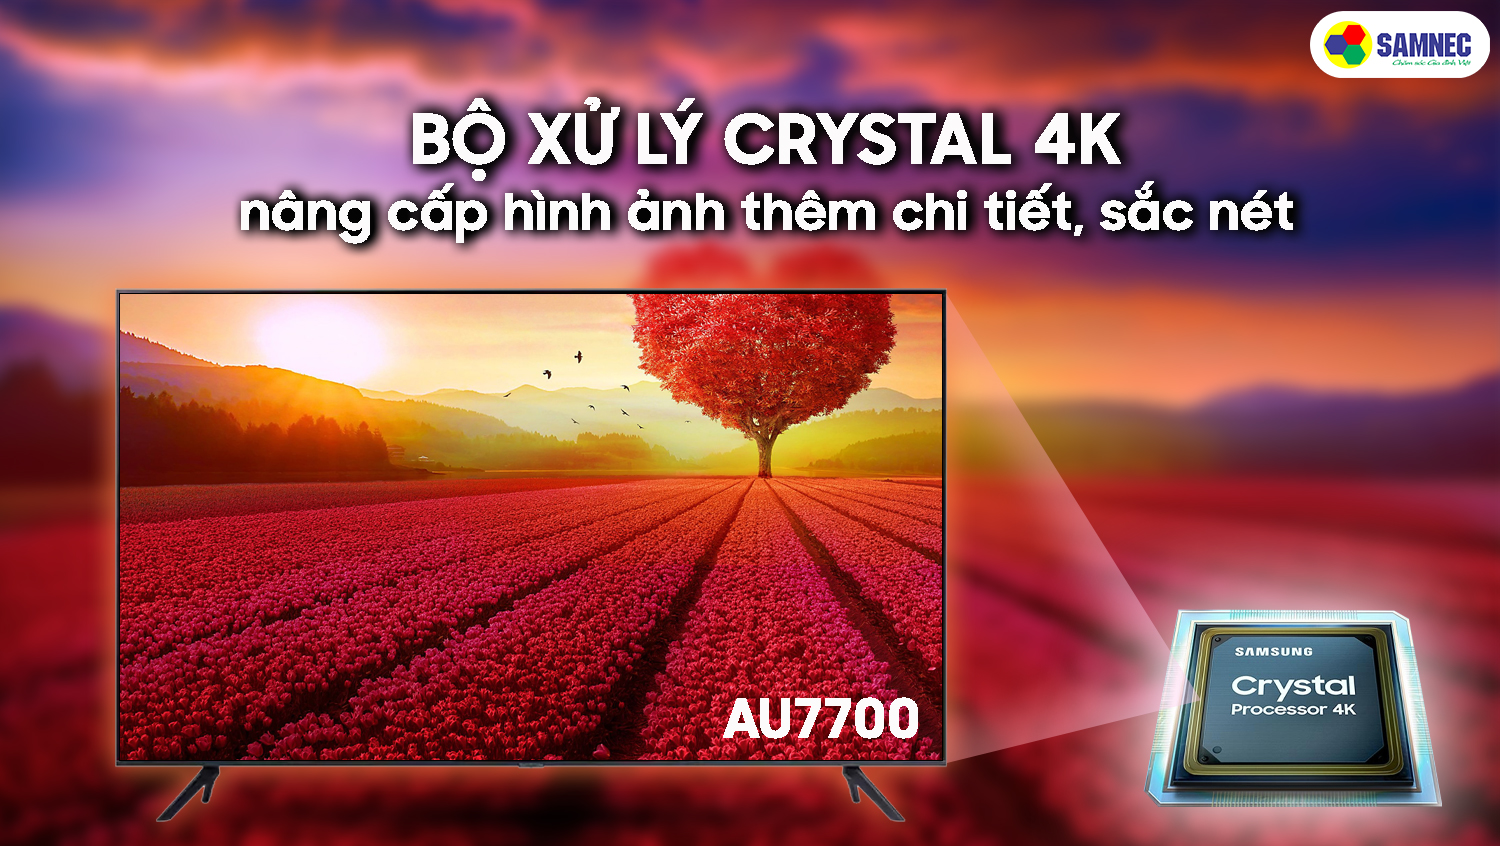 Được đánh giá cao từ các chuyên gia, Smart Tivi Samsung AU7700 mang đến cho bạn những trải nghiệm tuyệt vời với hình ảnh 4K sắc nét. Hãy đến với Tivi 4K và xem ngay bài review đầy đủ về chiếc tivi thông minh này. Chắc chắn bạn sẽ không hối hận khi đầu tư cho nó.